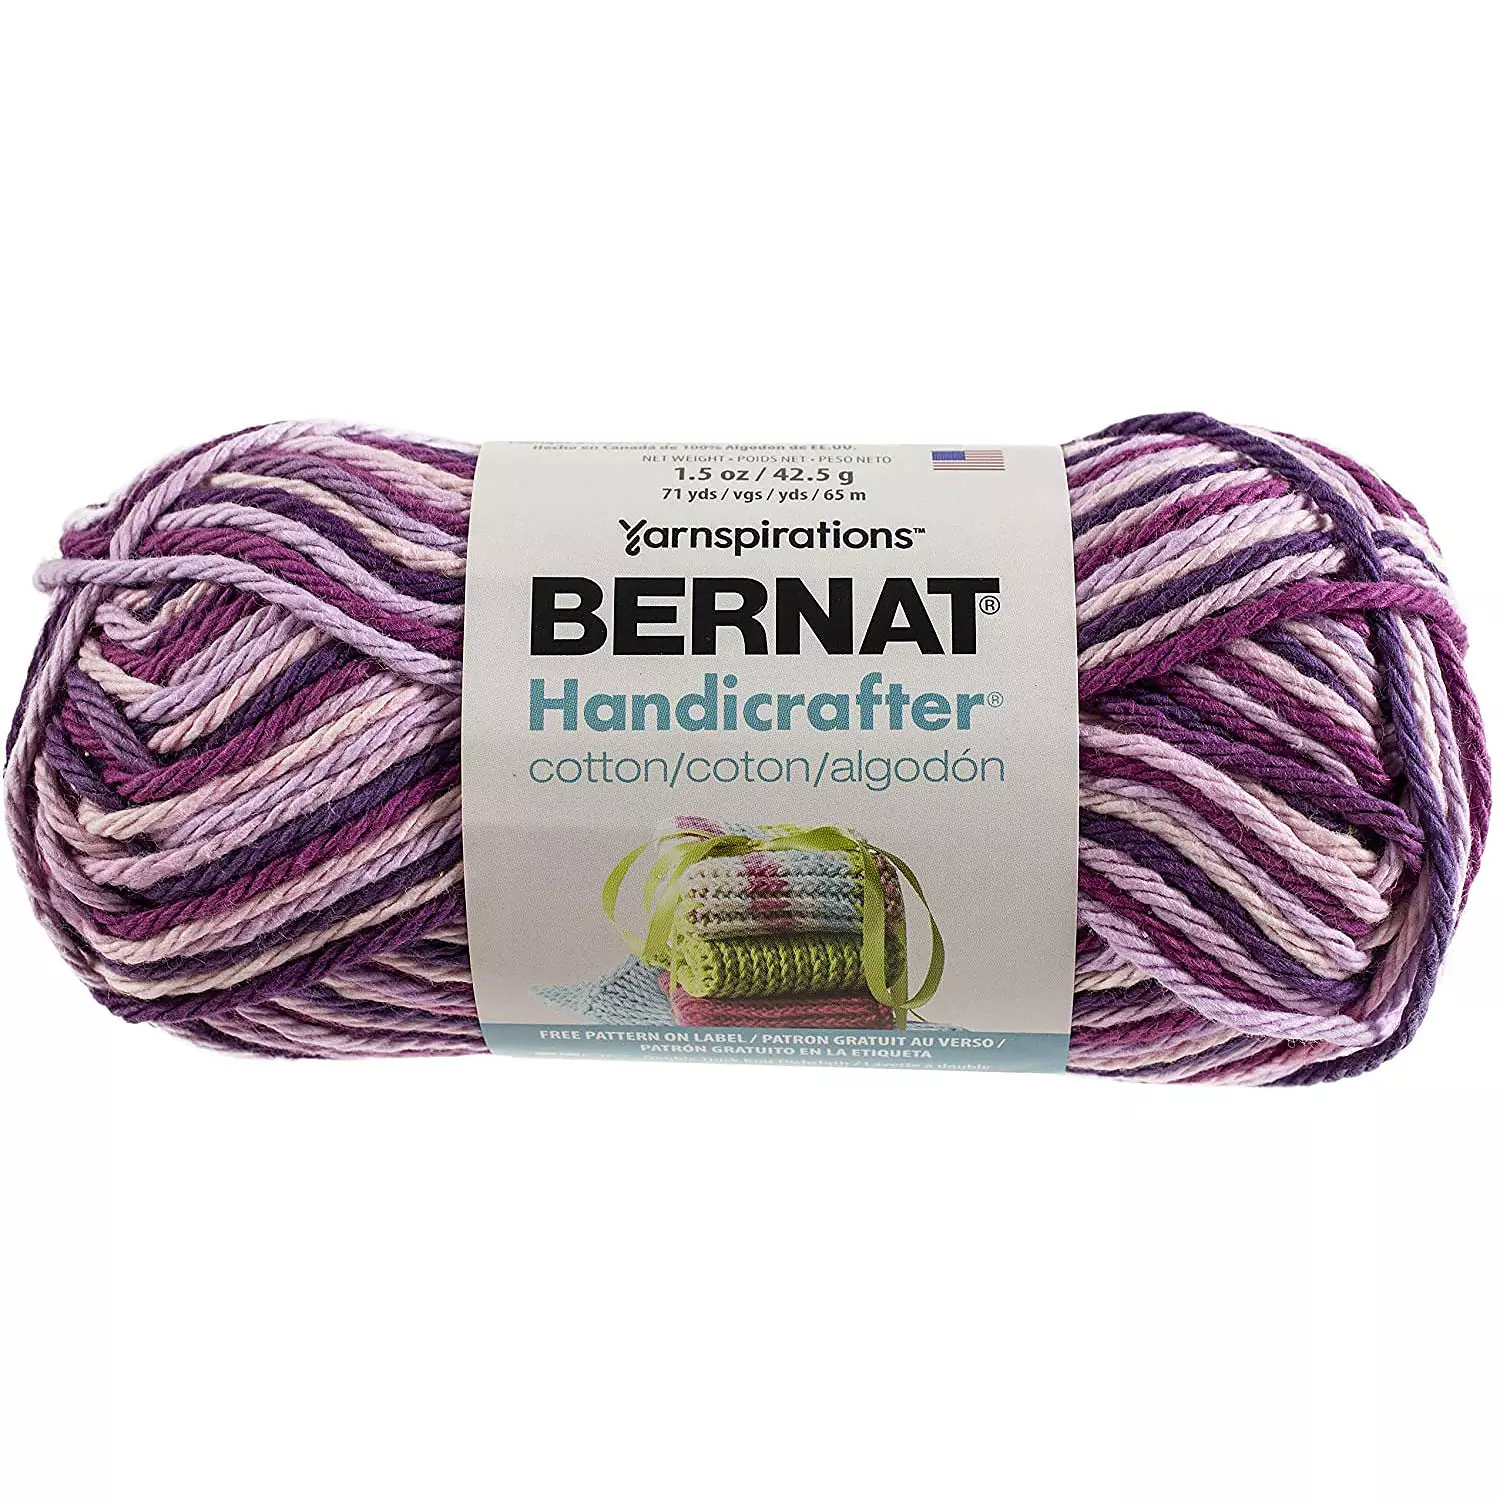 Bernat Handicrafter - Cotton yarn, garden party ombre